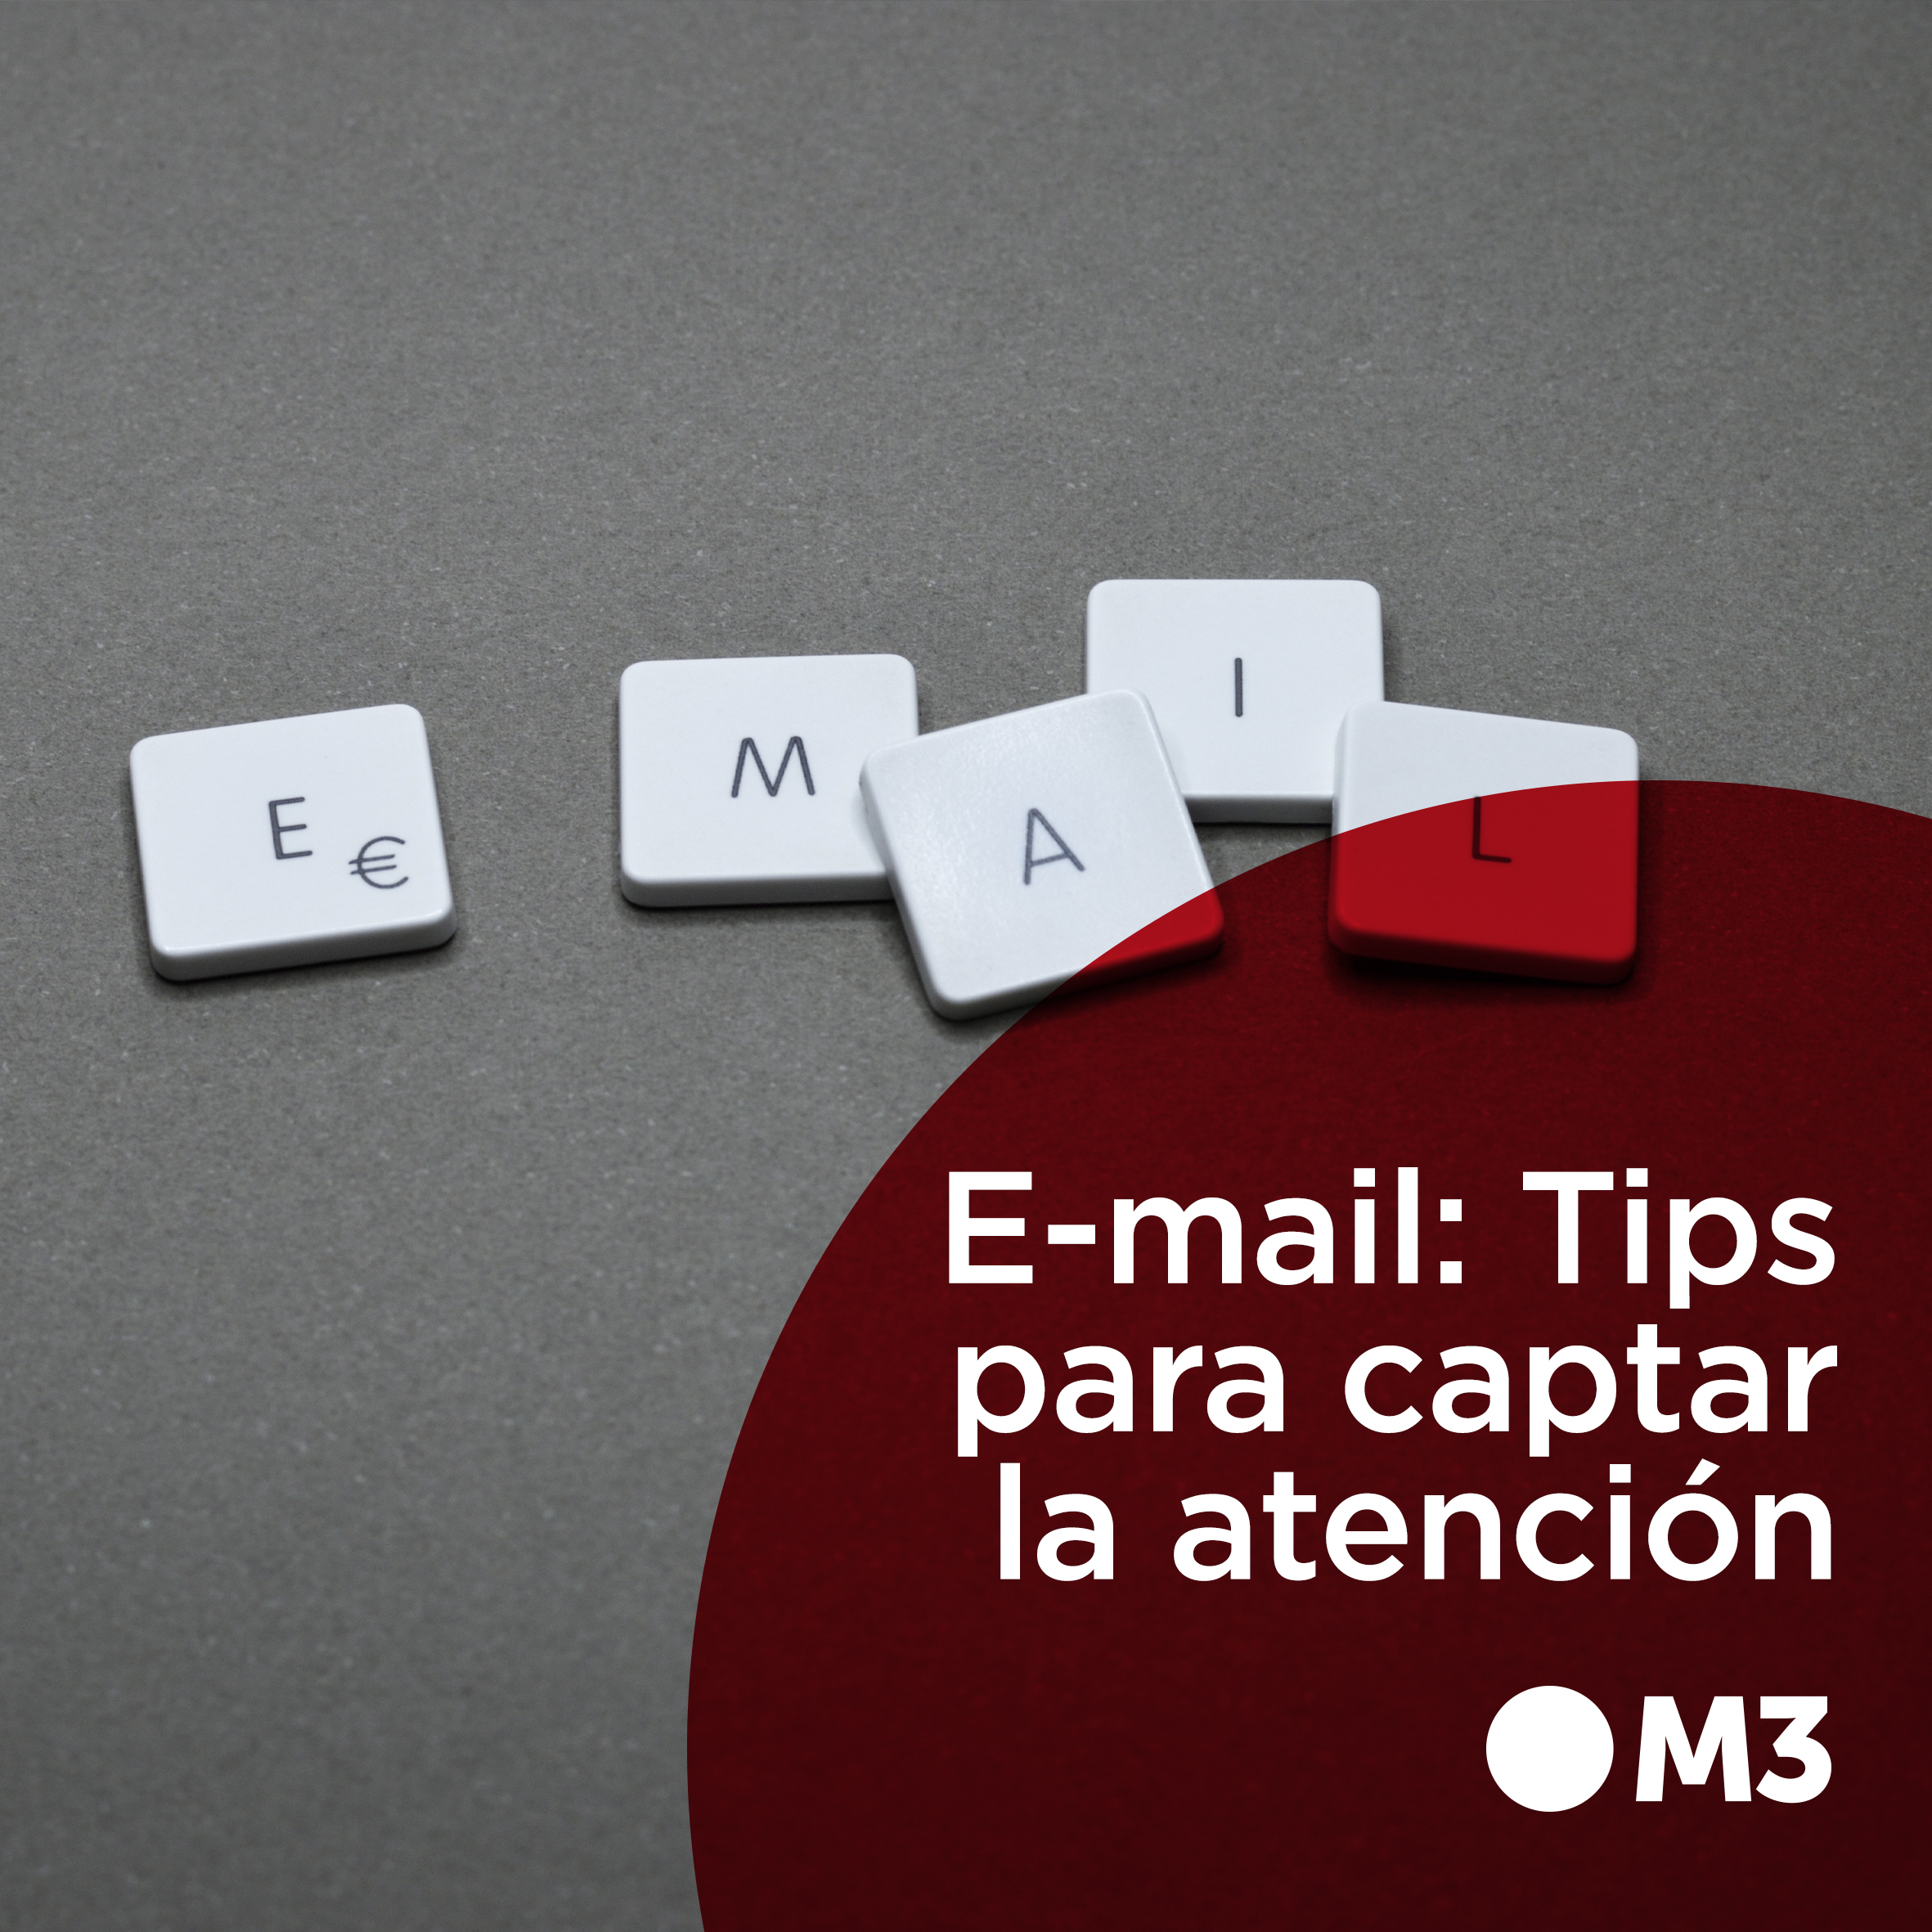 Email marketing: Tips para captar la atención